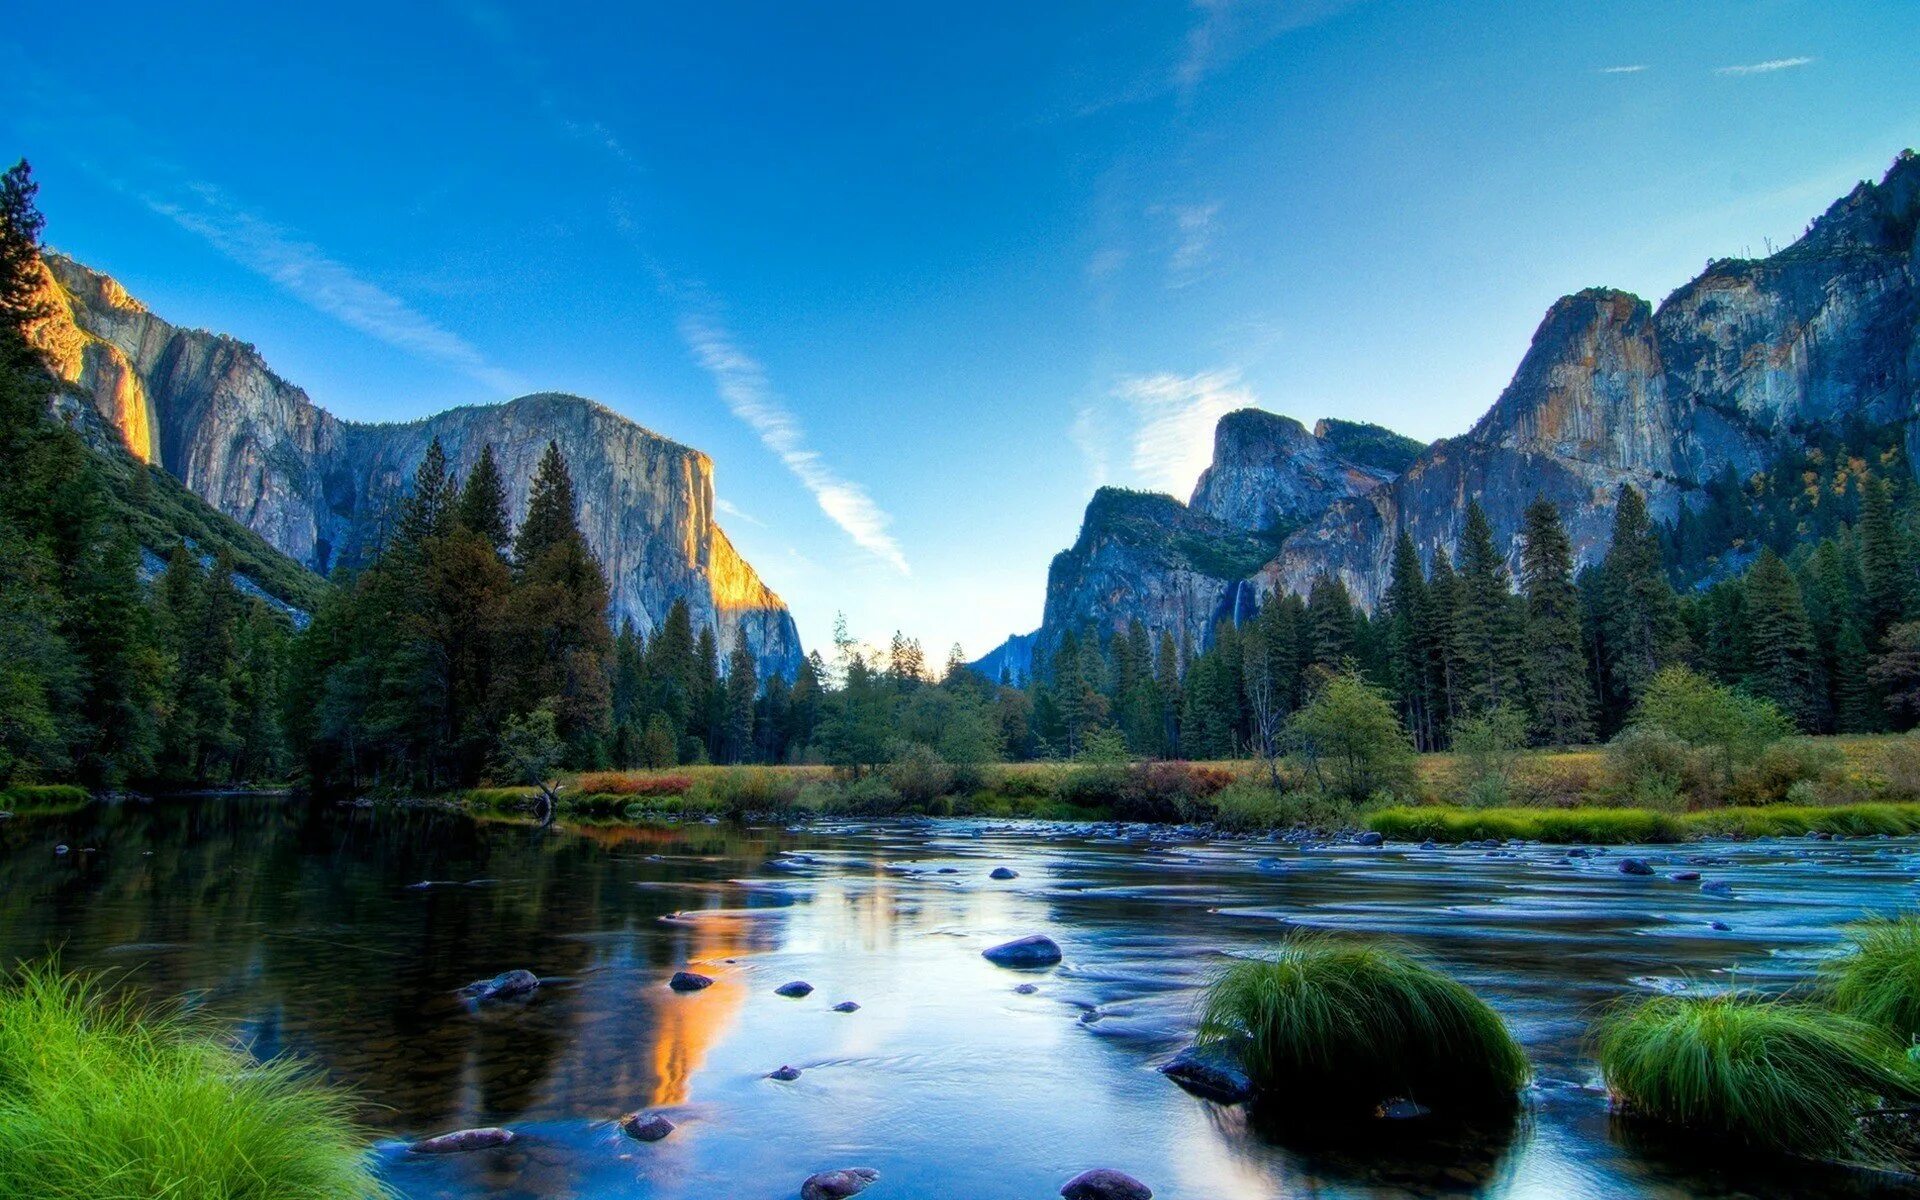 Фулл фотка. Йосемити национальный парк. Долина Йосемити, США. Горы озеро Yosemite National Park. Йосемити национальный парк прозрачное озеро.